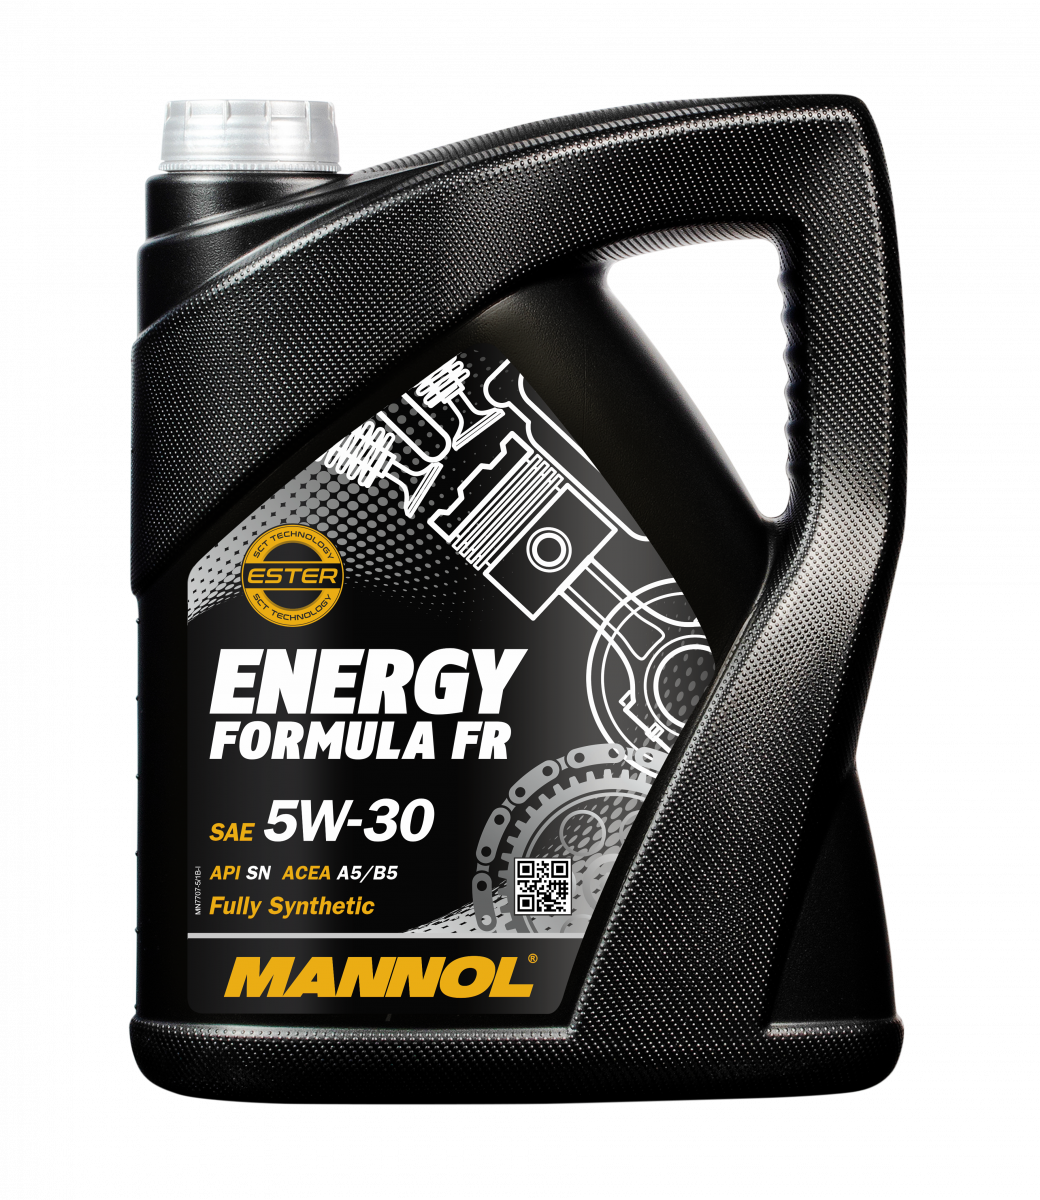 Mannol - 7707 Energy Formula FR 5W-30 Engine Oil